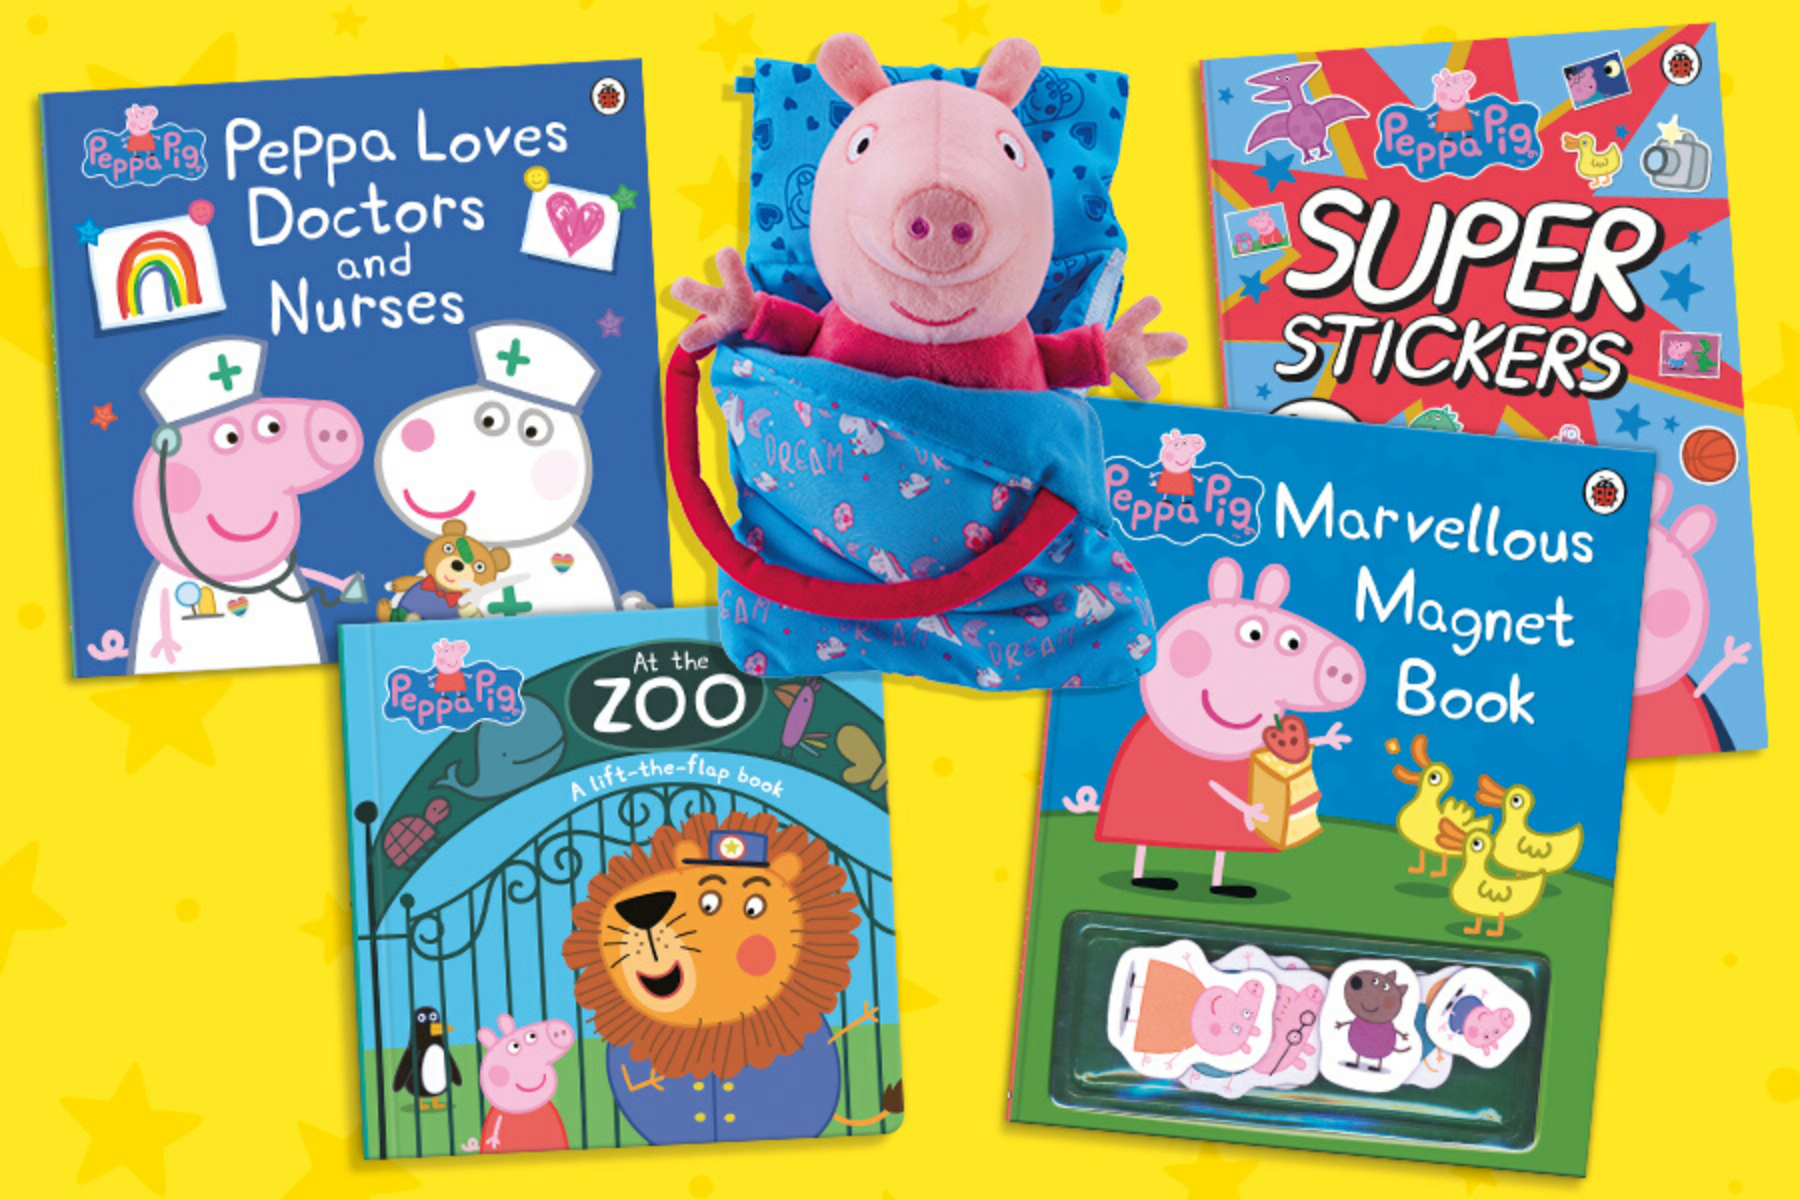 Peppa Pig bundle including Peppa Loves Doctors and Nurses